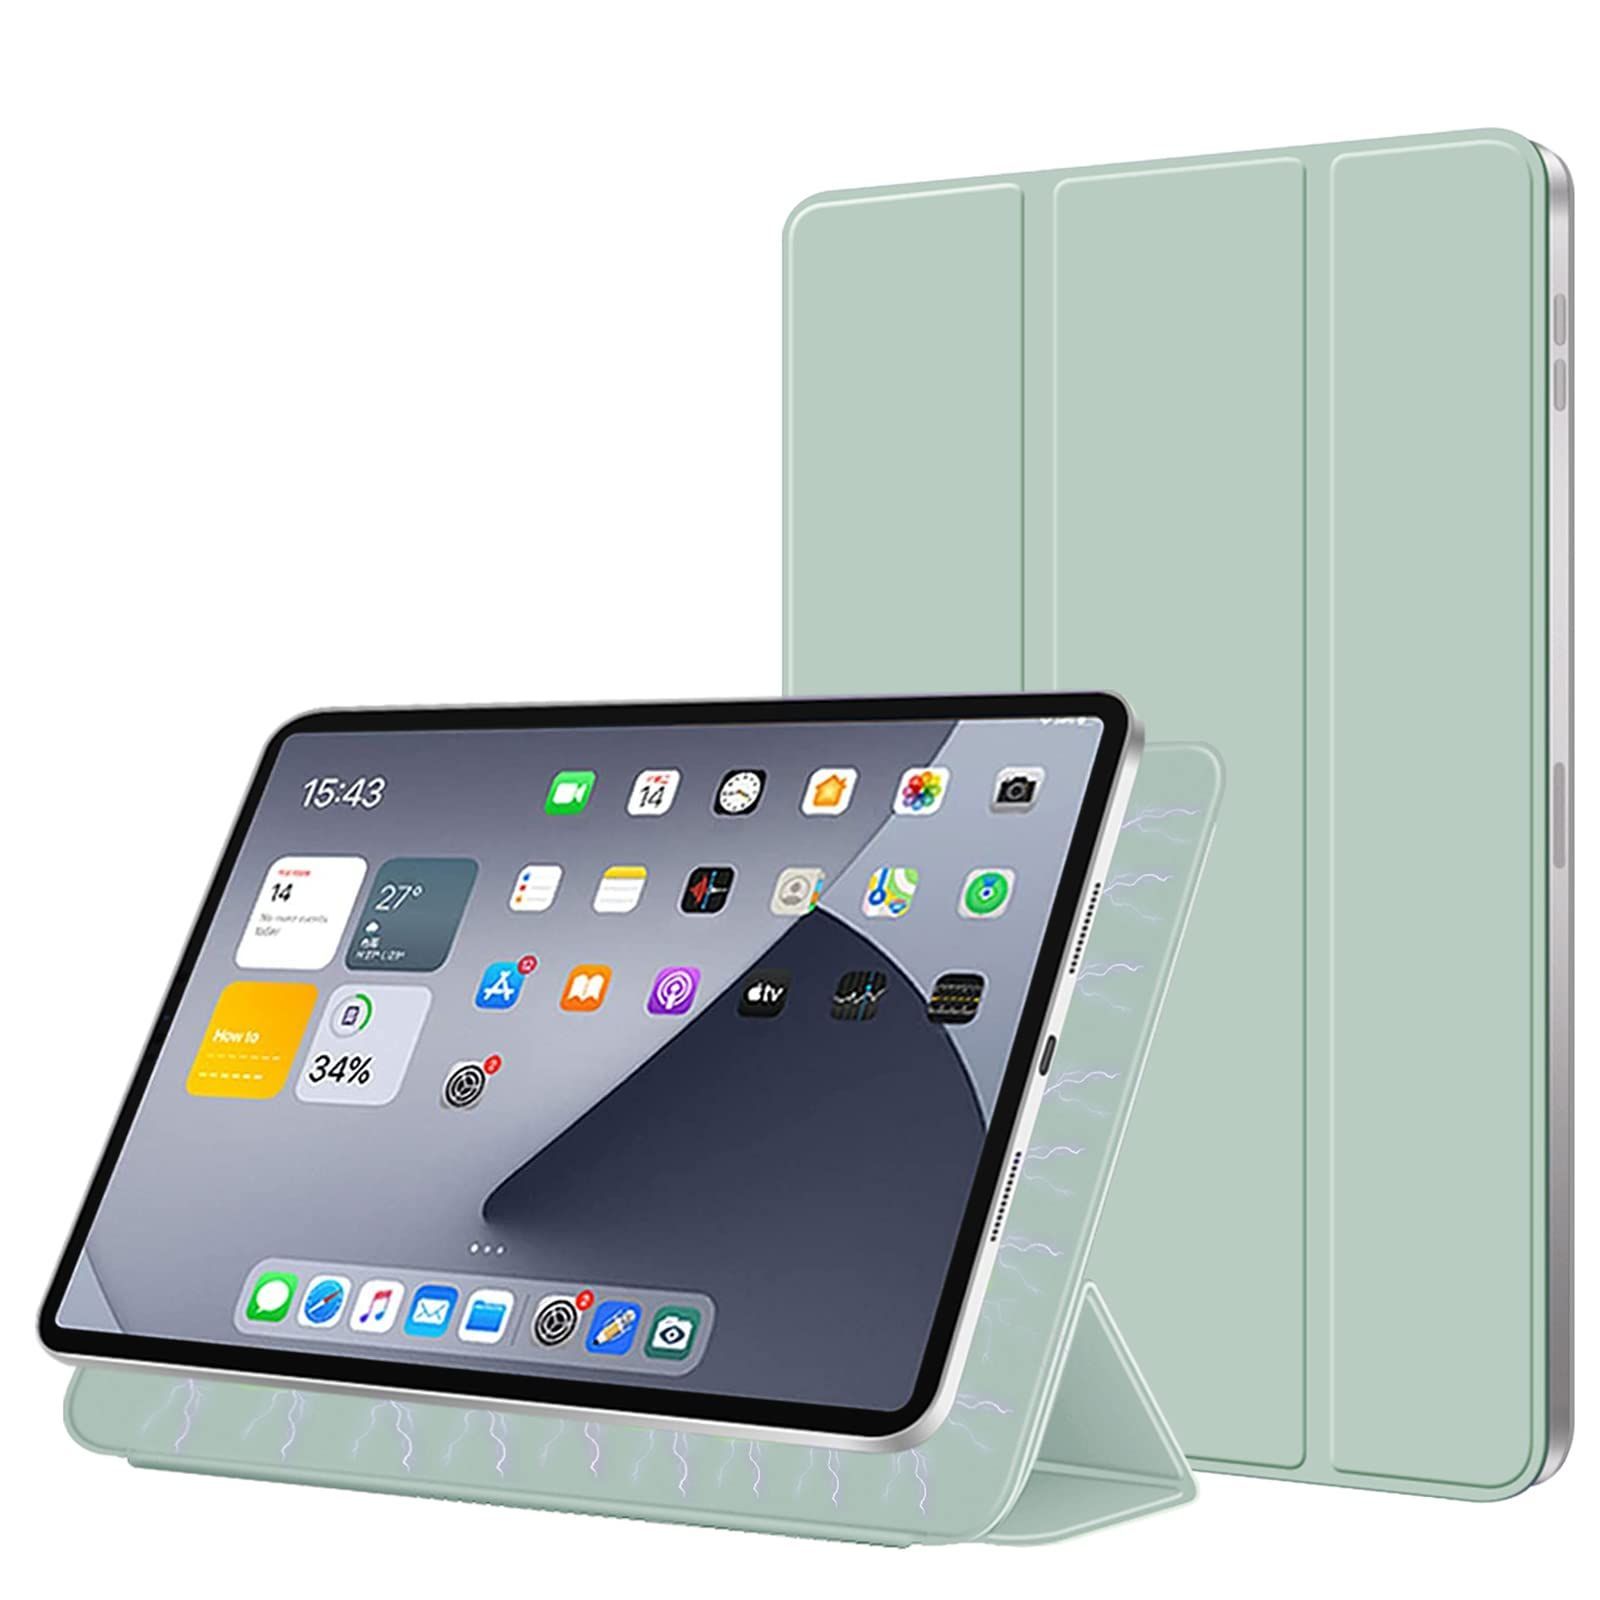 iPad Airケース 10.9インチ 第4 5世代 ケース シリコン クリア